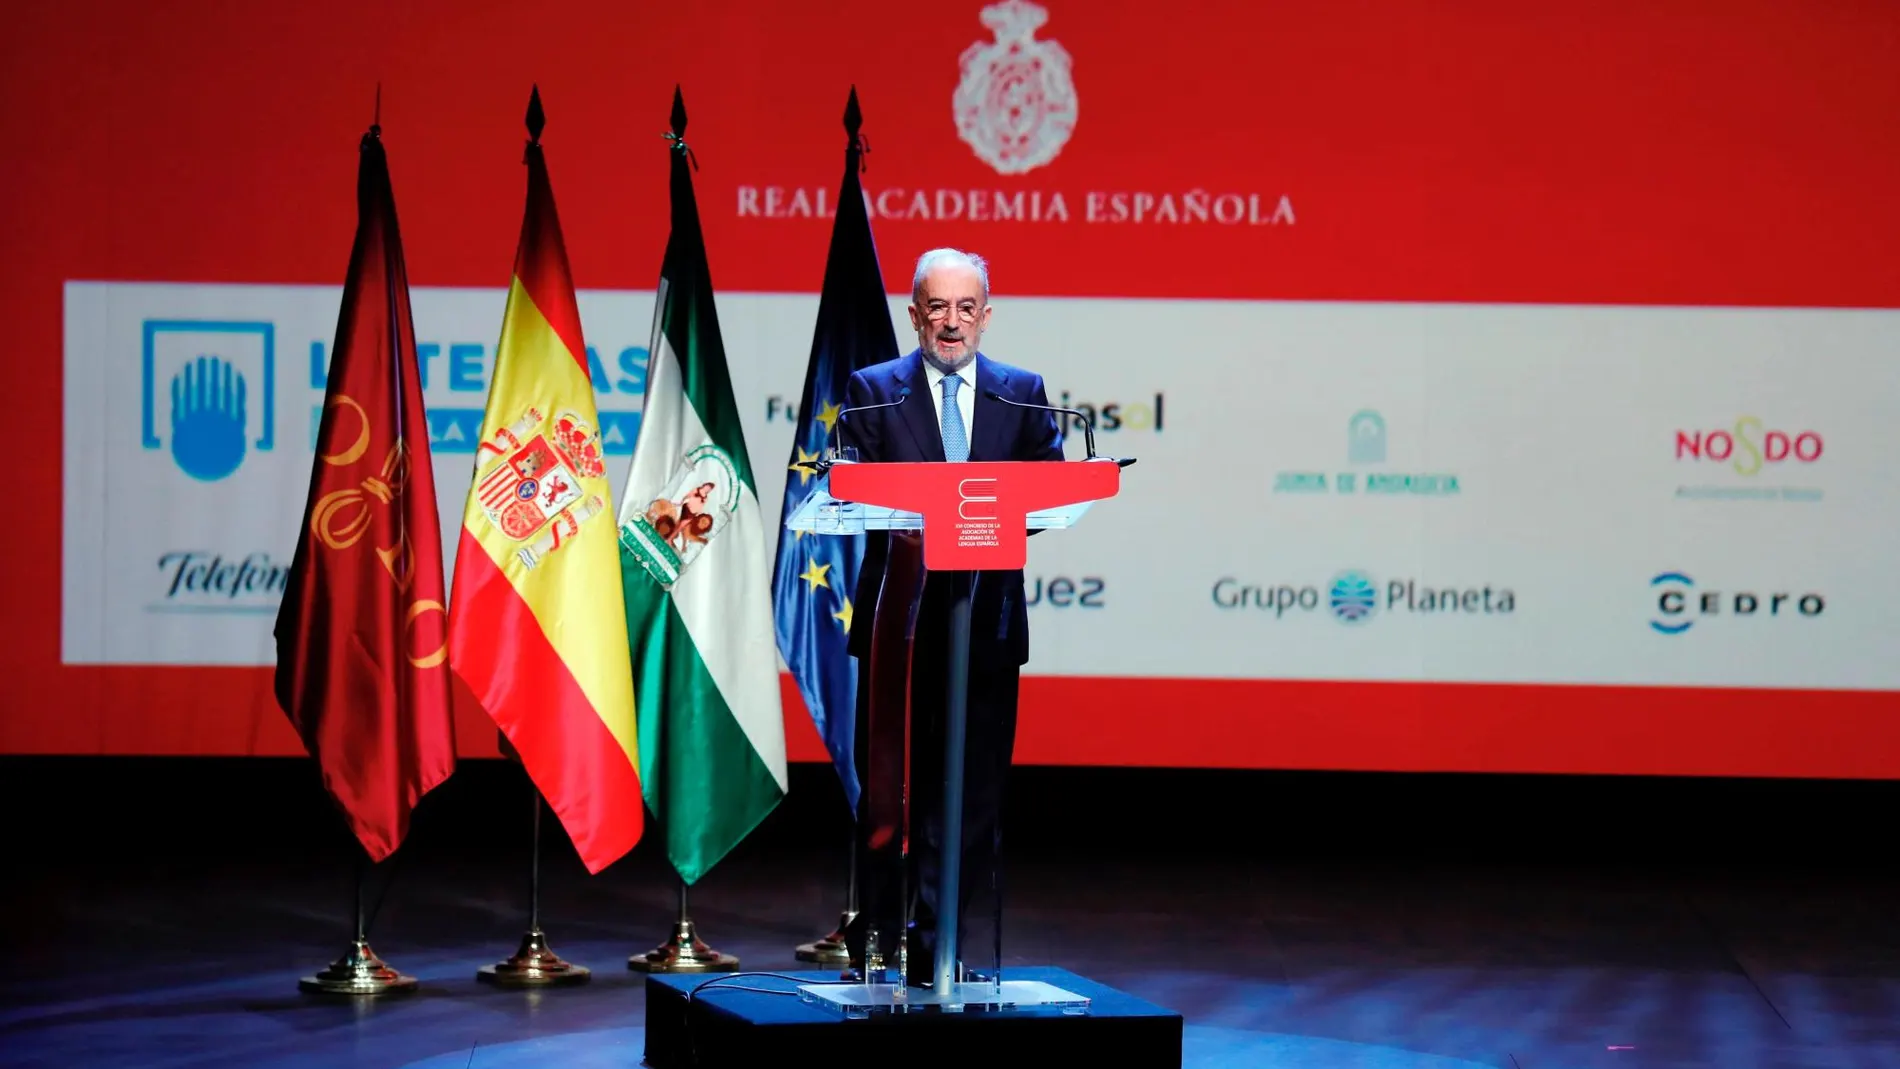 El director de la Real Academia Española (RAE), Santiago Muñoz Machado, durante su intervención / Efe